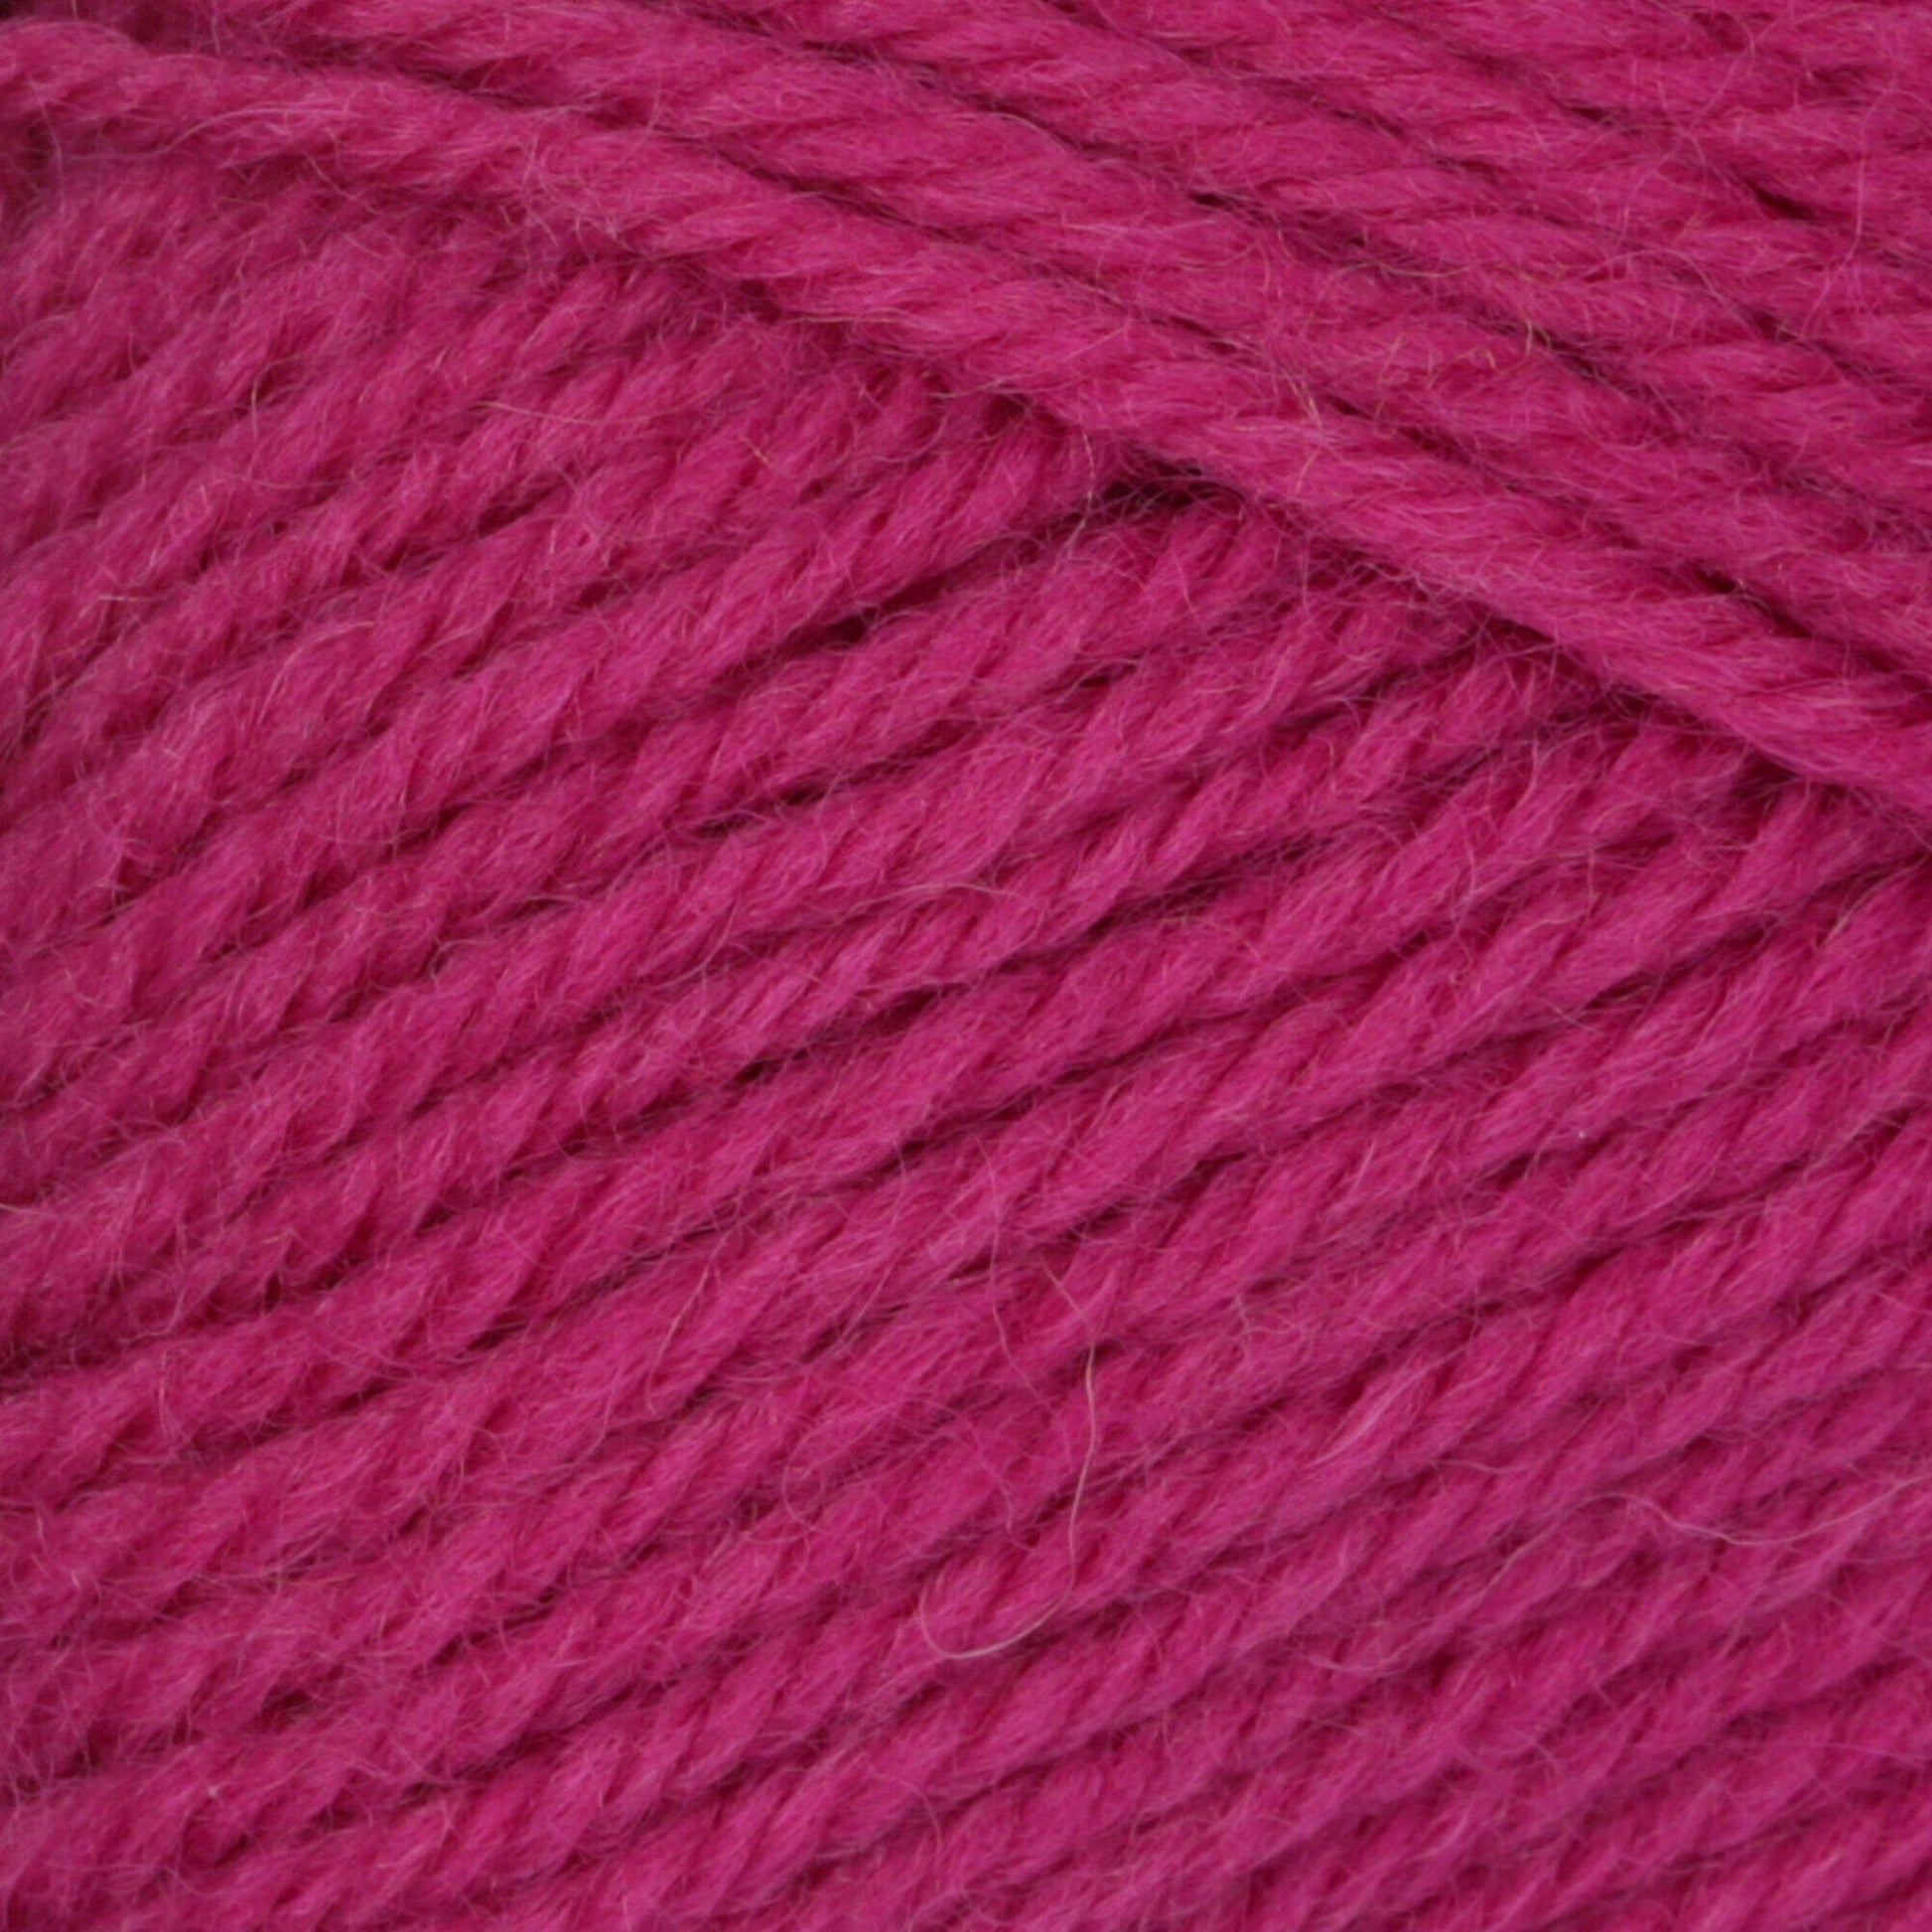 Patons Classic Wool DK Superwash Yarn - Discontinued Shades Magenta